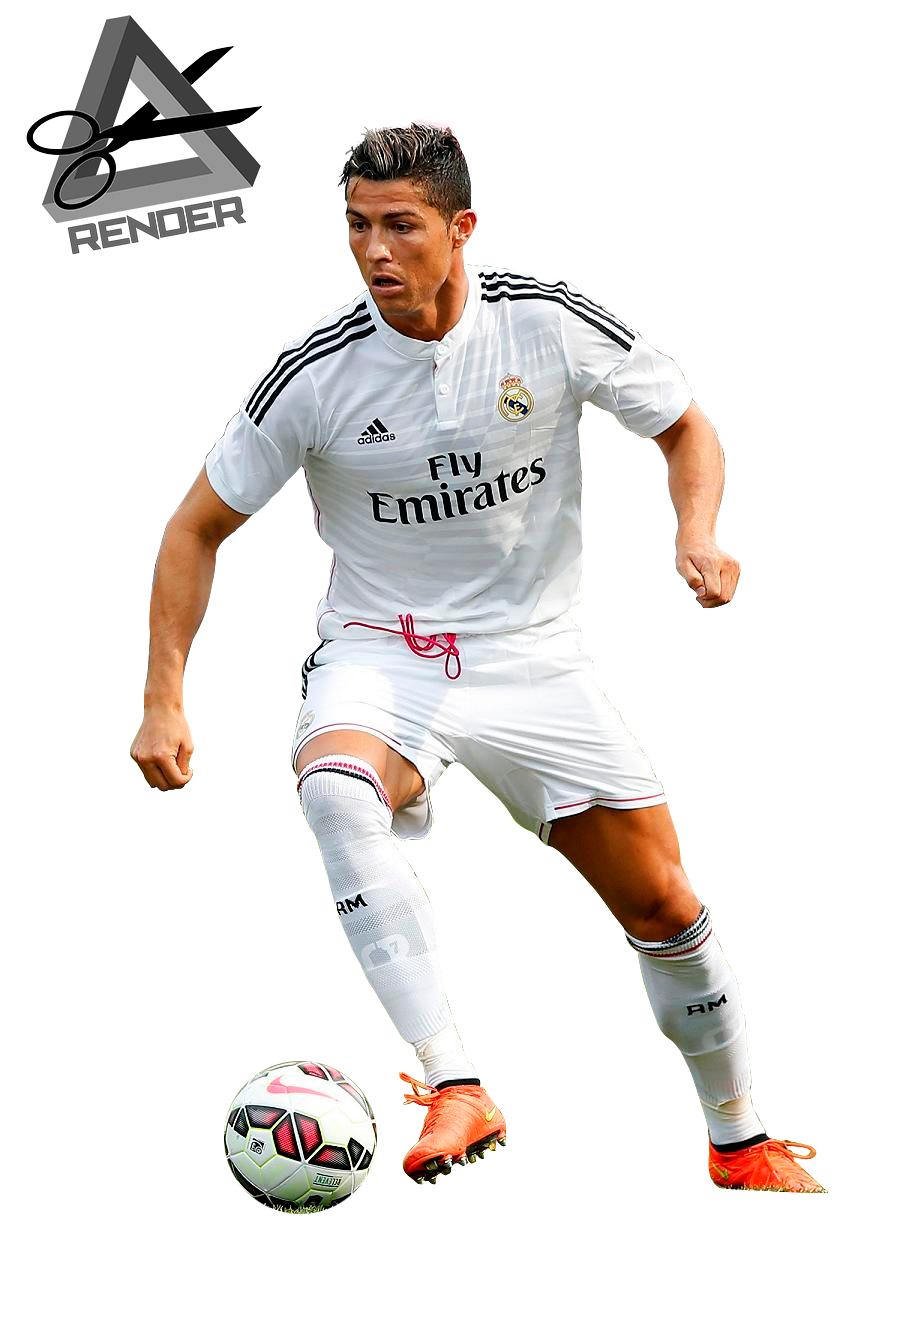 Koleksi Foto Cristiano Ronaldo Terbaru | INFORMASI MENARIK ...